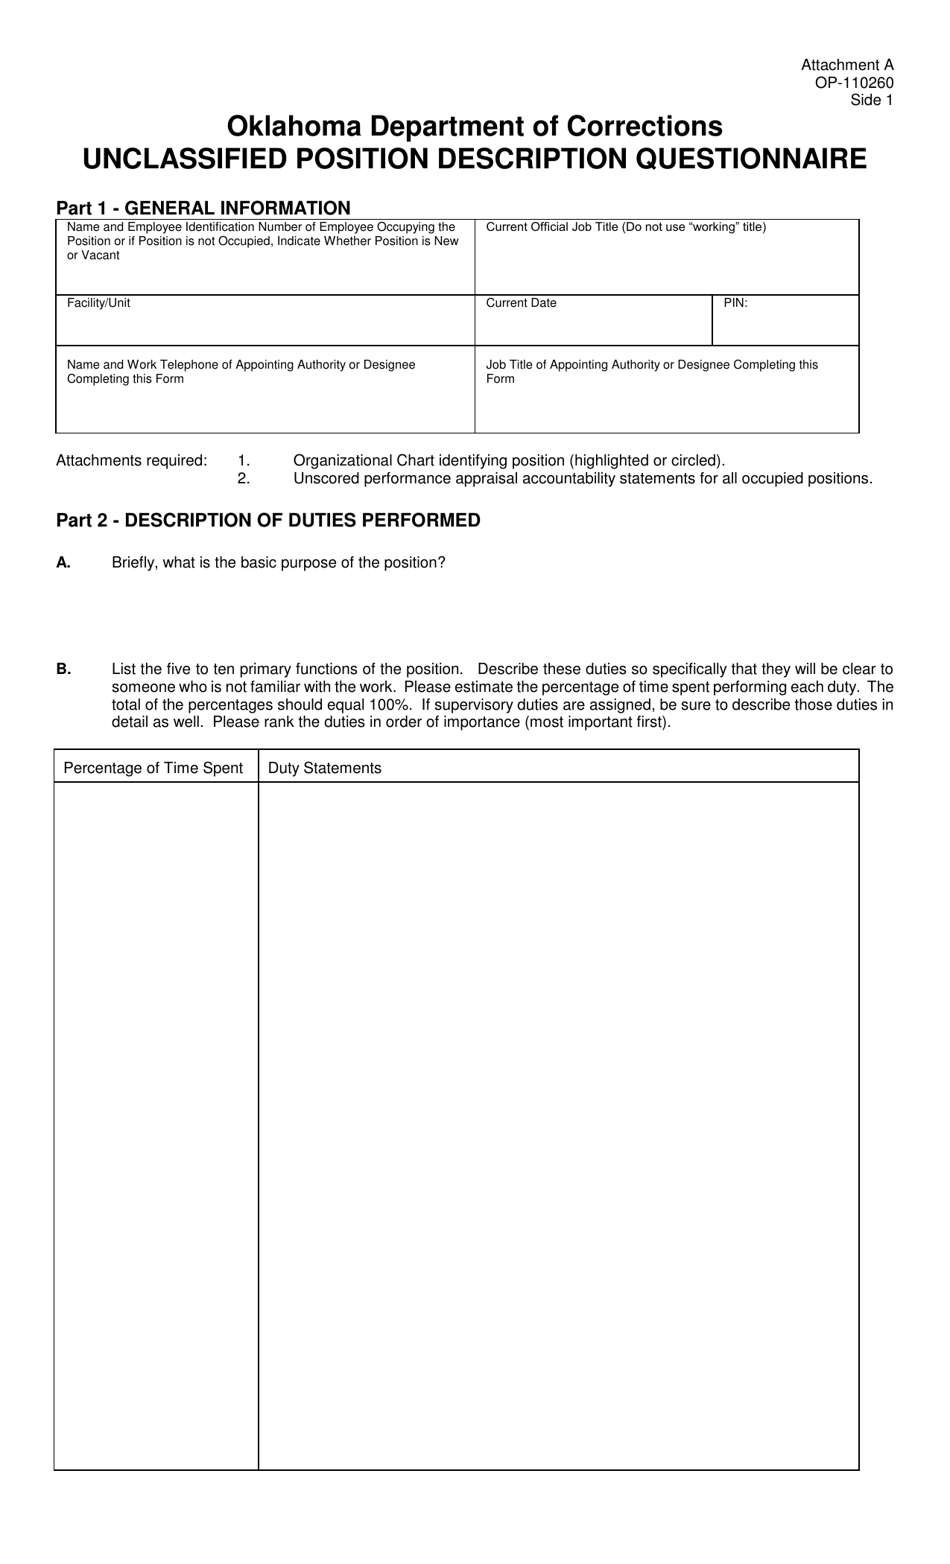 Form OP-110260 Attachment A Unclassified Position Description Questionnaire - Oklahoma, Page 1